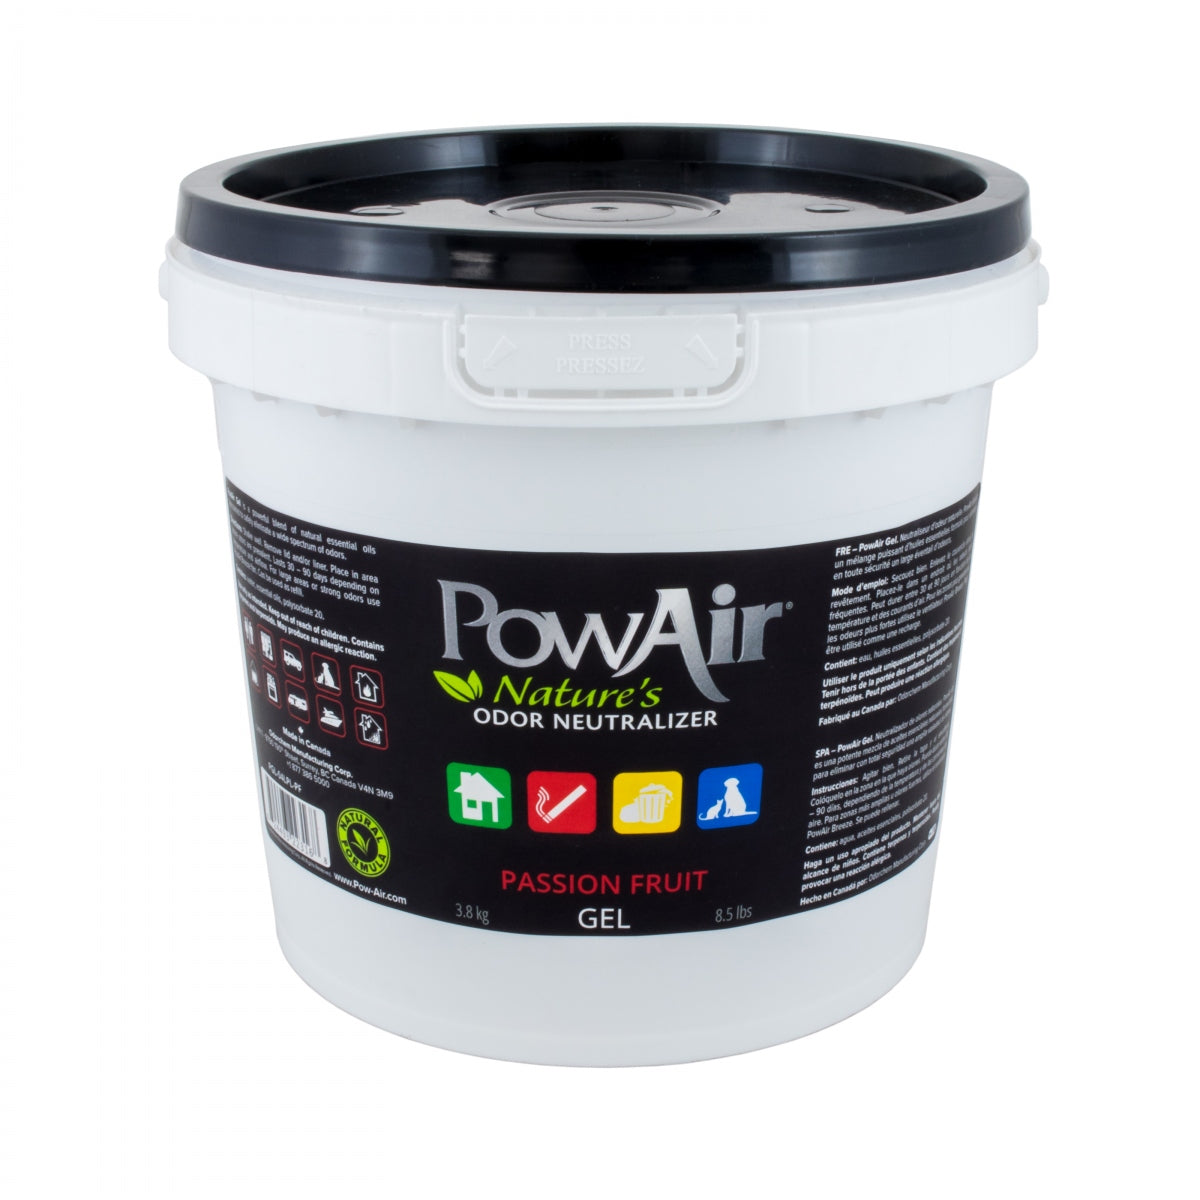 PowAir Odour Neutraliser Gel Passion Fruit 3.8kg-PowAir-Catsmart-express